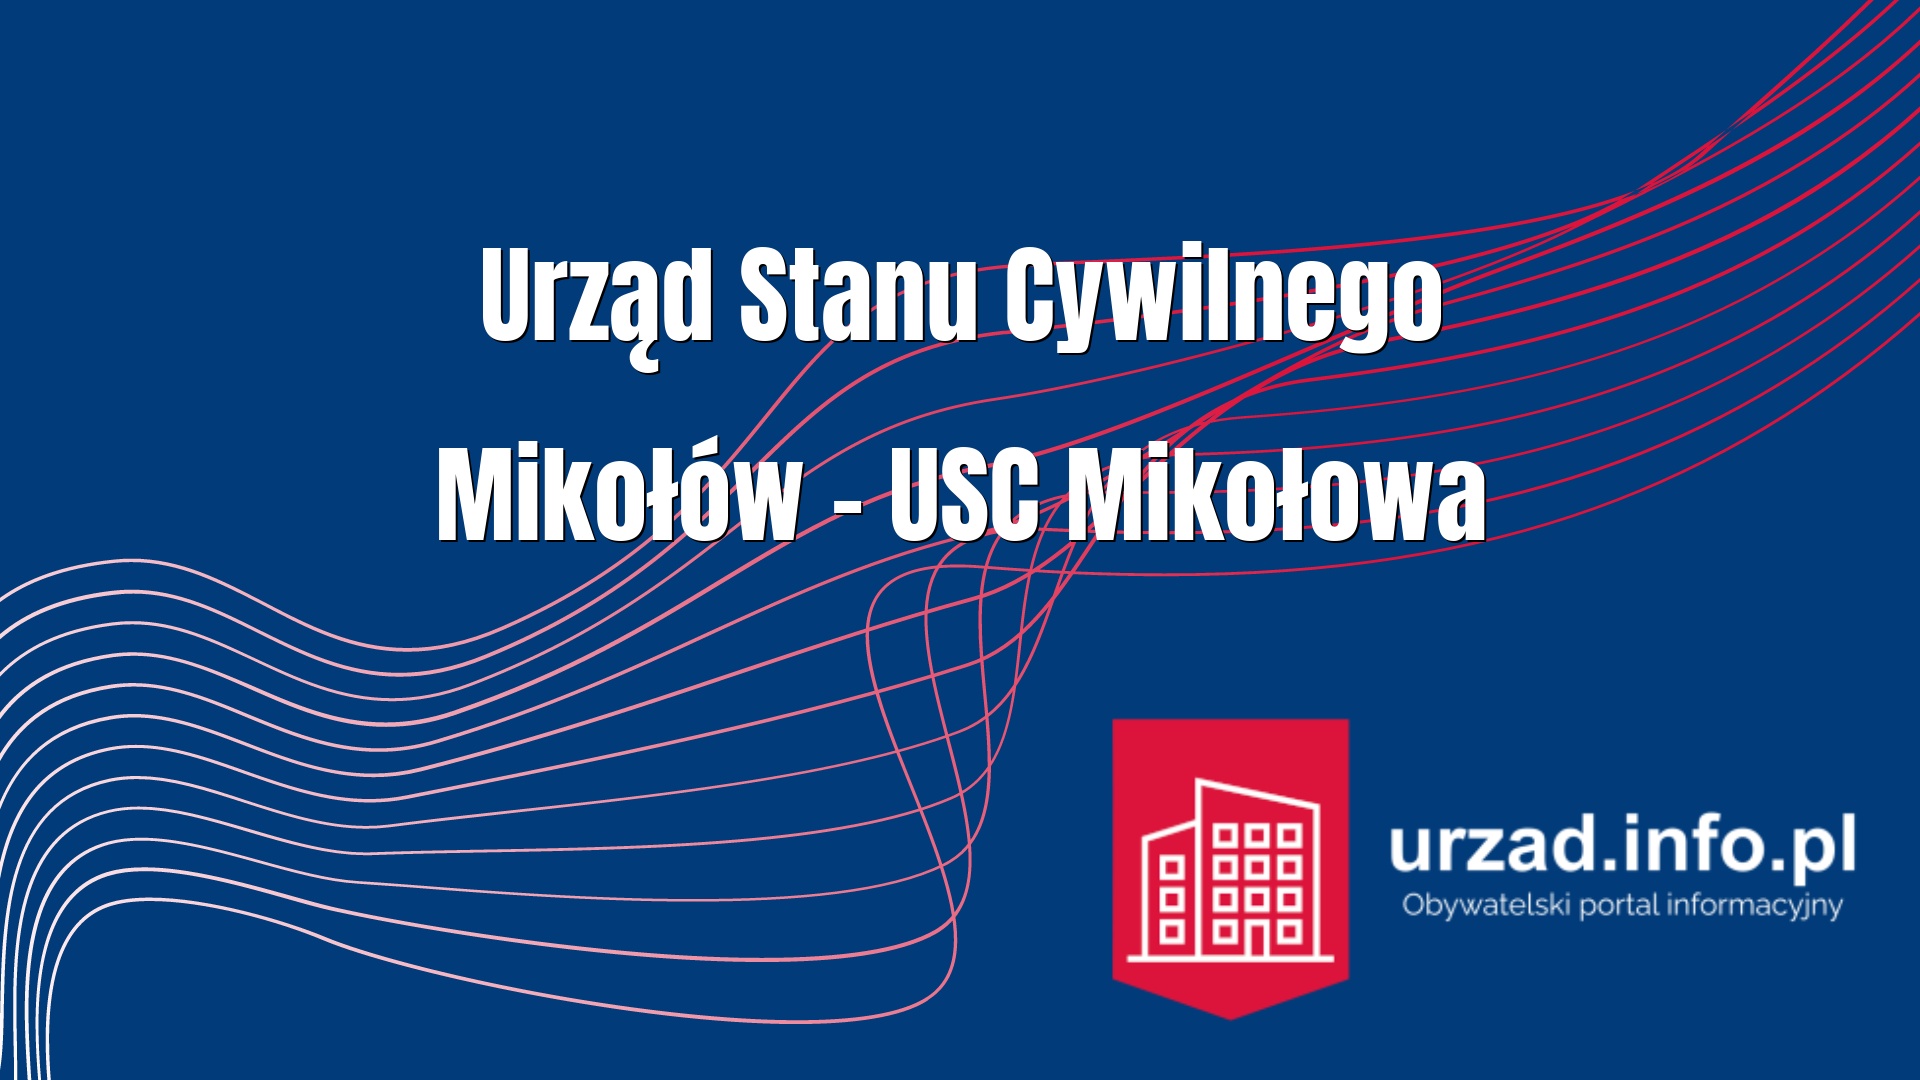 Urząd Stanu Cywilnego Mikołów – USC Mikołowa